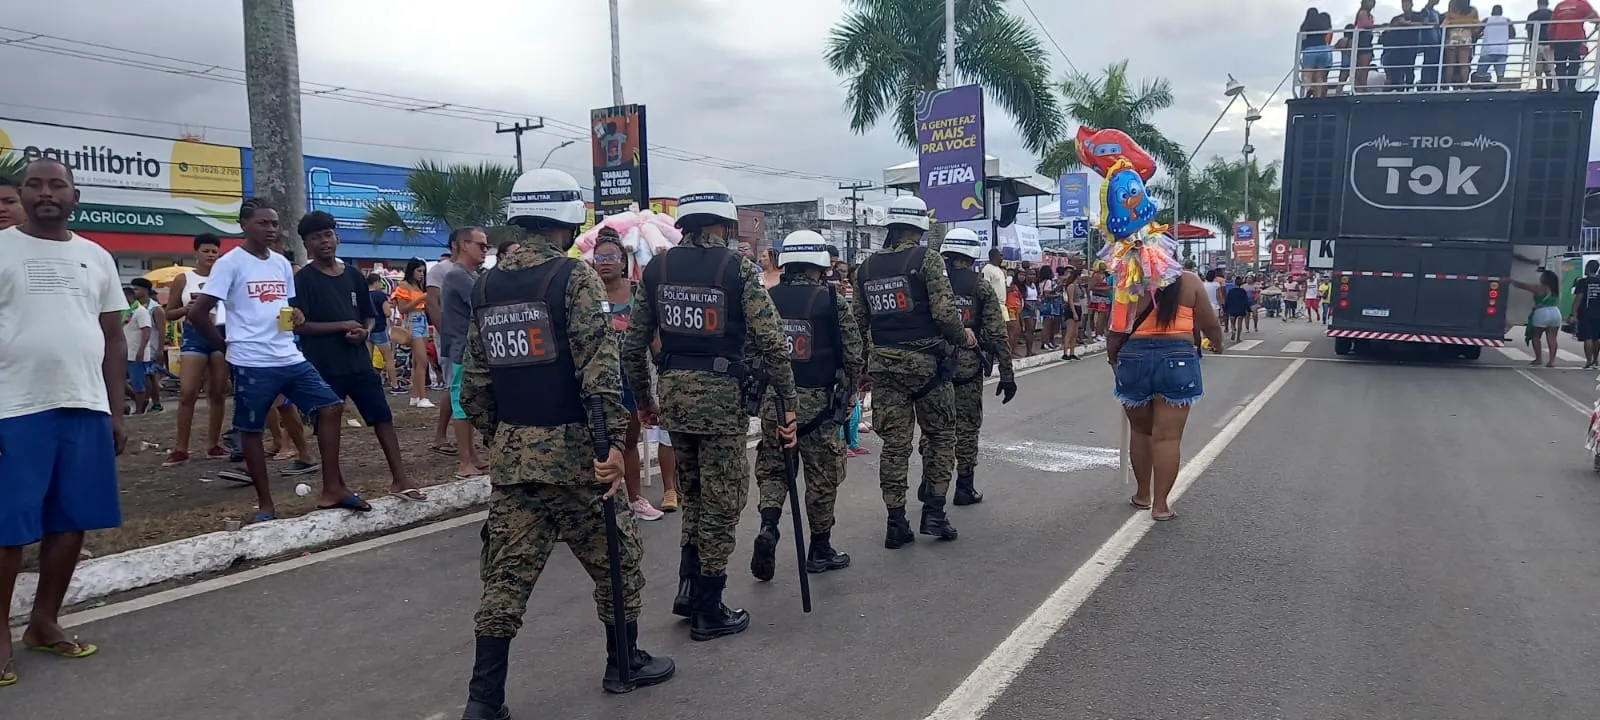 Equipes das polícias Militar, Civil e Técnica, além do Corpo de Bombeiros atuaram no evento